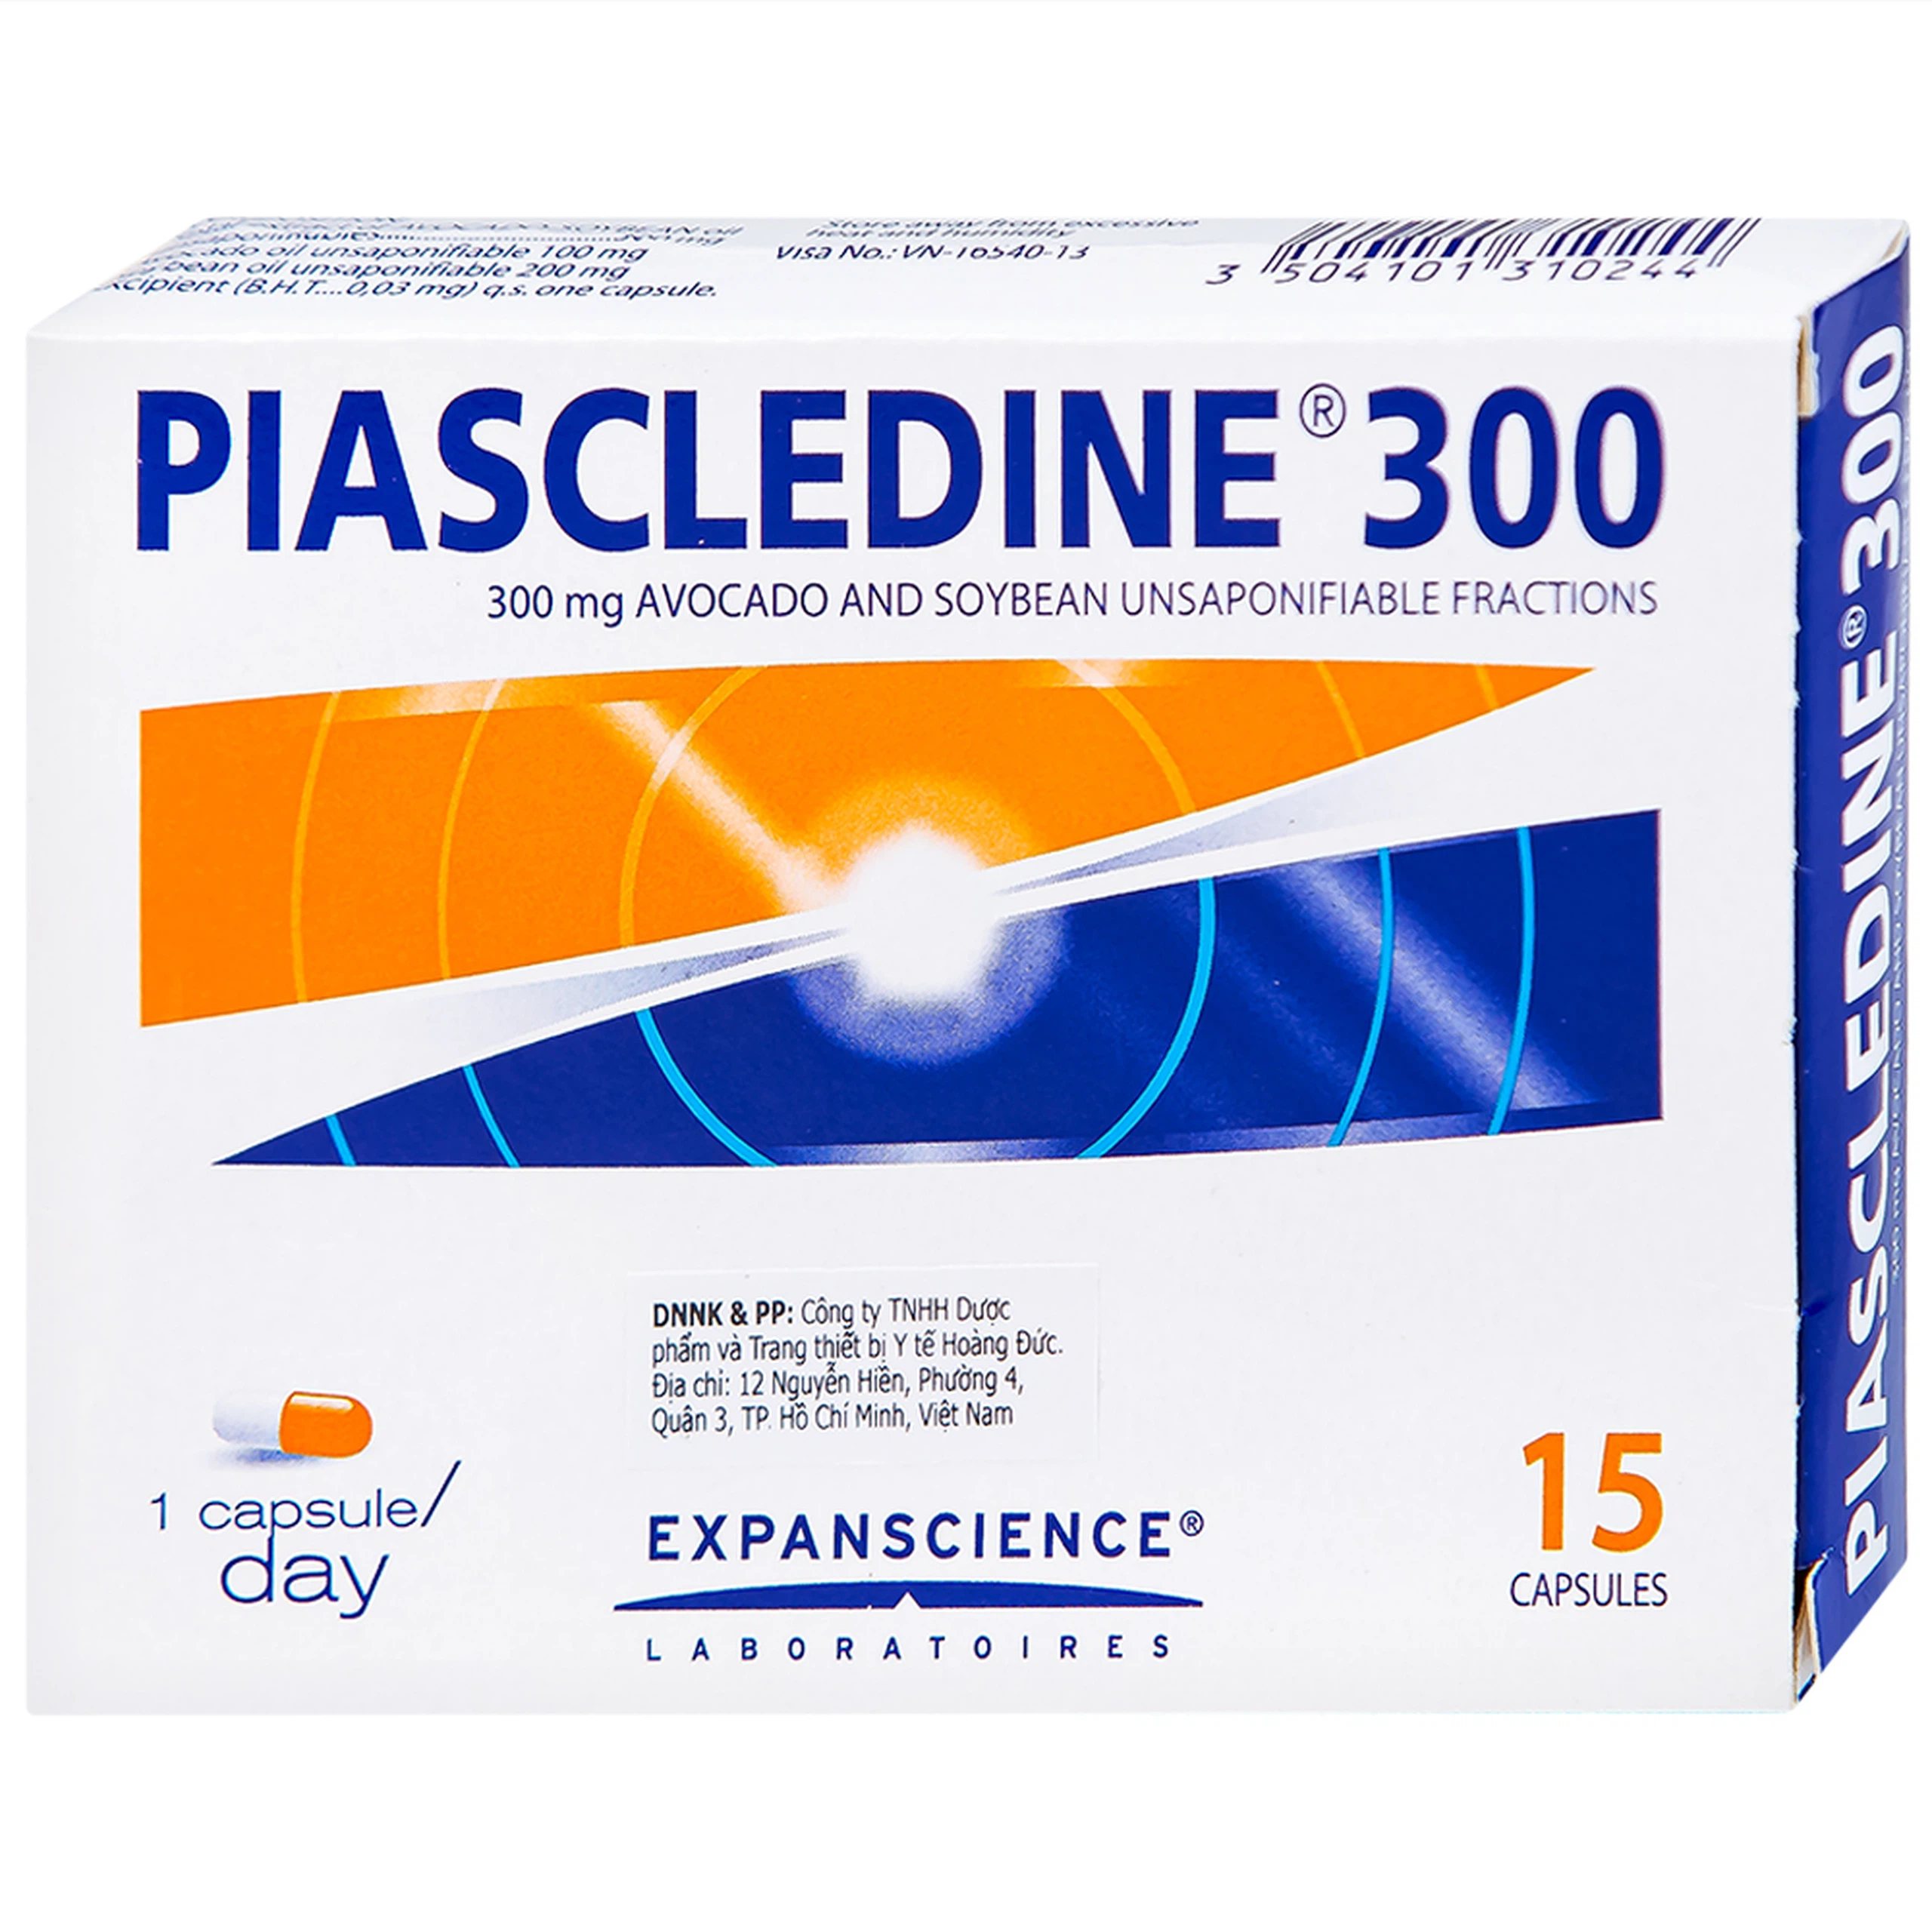 Viên nang cứng Piascledine 300 Hyphens điều trị viêm xương khớp hông và khớp gối (1 vỉ x 15 viên) 